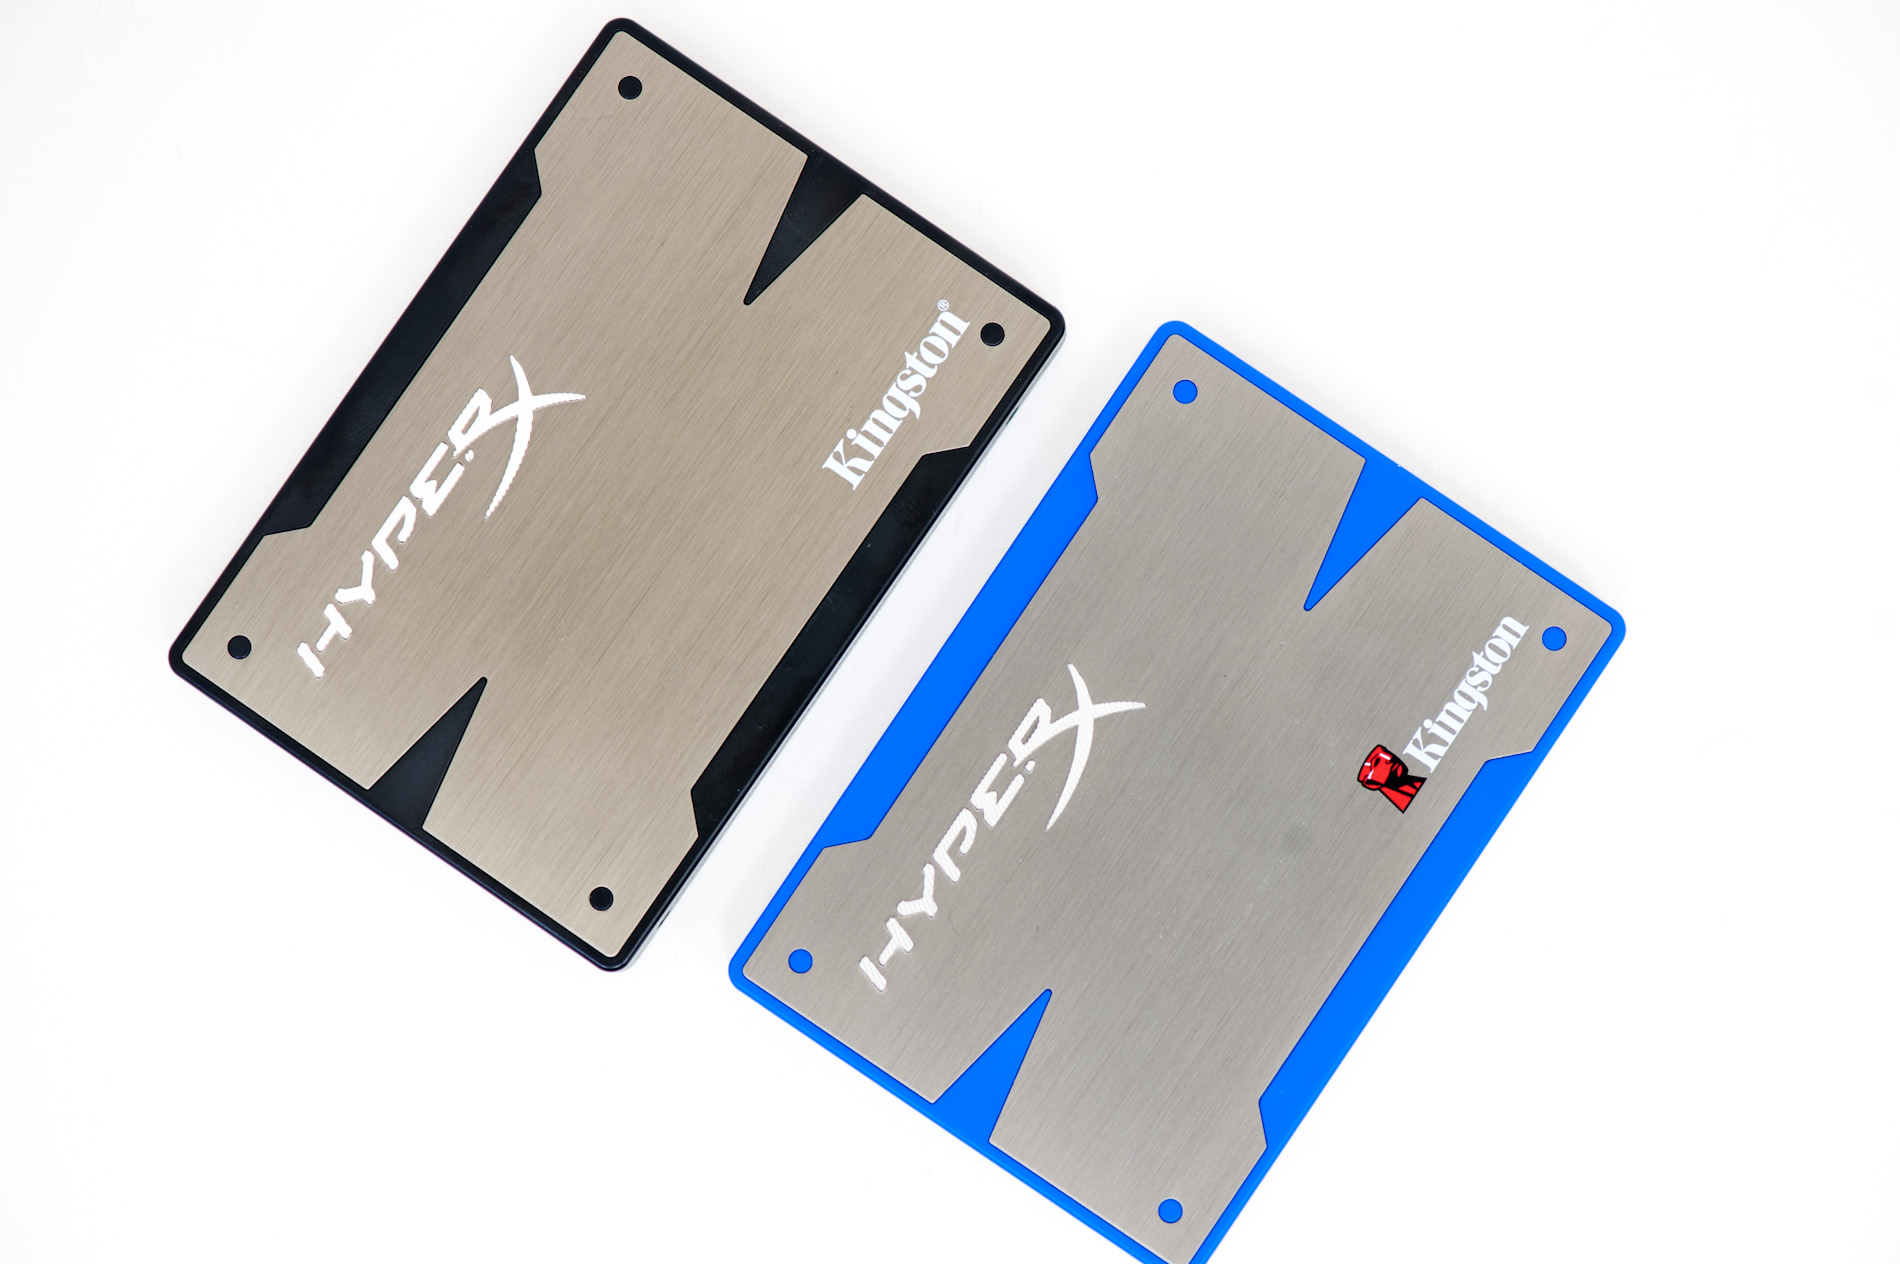 Serious Dean Lubricate Kingston HyperX 3K (240GB) SSD Review